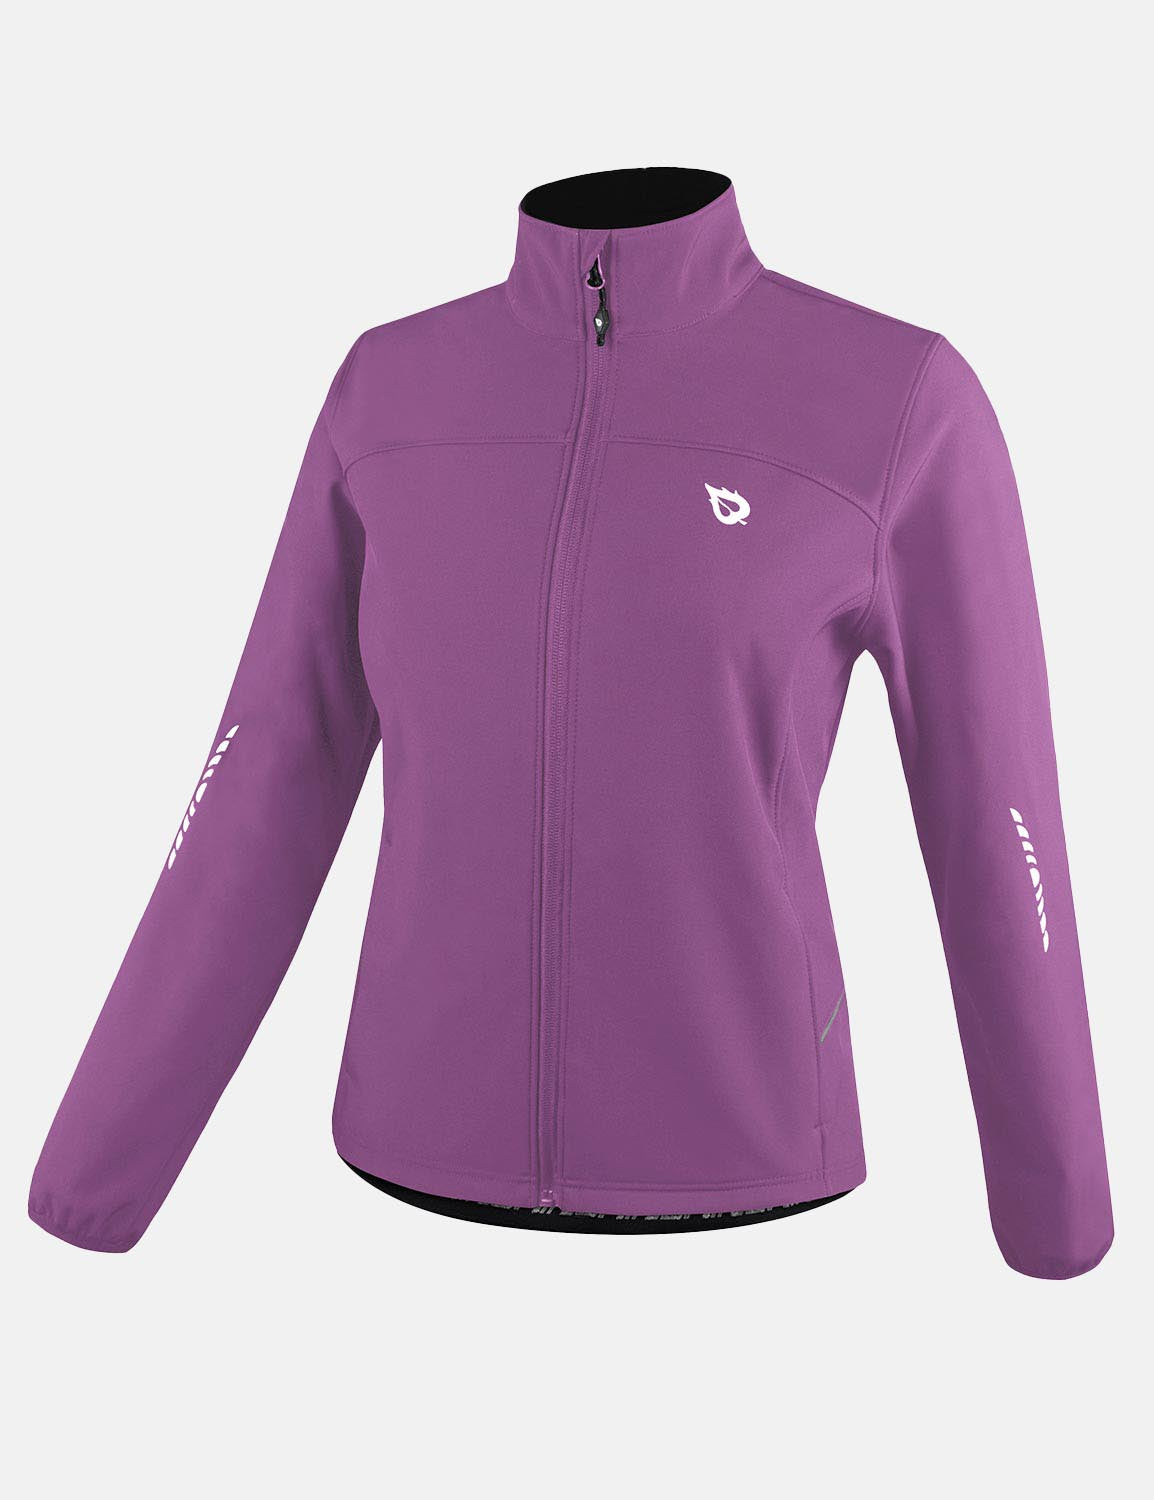 Baleaf Women's Wind- & Waterproof Thermal Long Sleeved Cycling Jacket aaa464 Hyacinth Violet Side